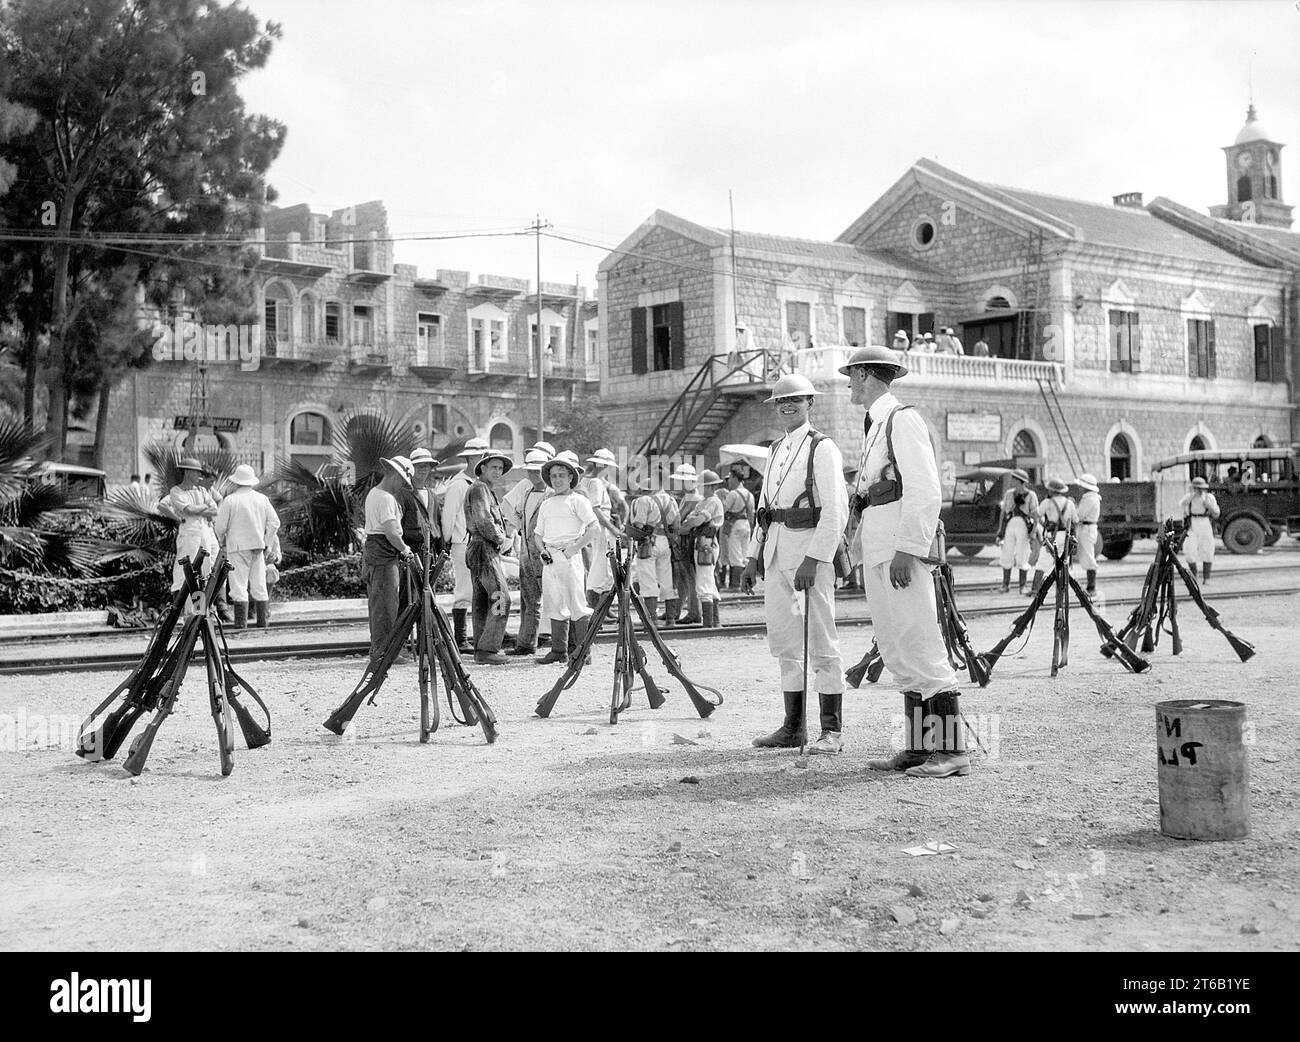 Marines britanniques dans la cour de la gare de Haïfa pendant les émeutes de Palestine de 1929, Palestine mandataire, collection de photographies G. Eric et Edith Matson, août 1929 Banque D'Images